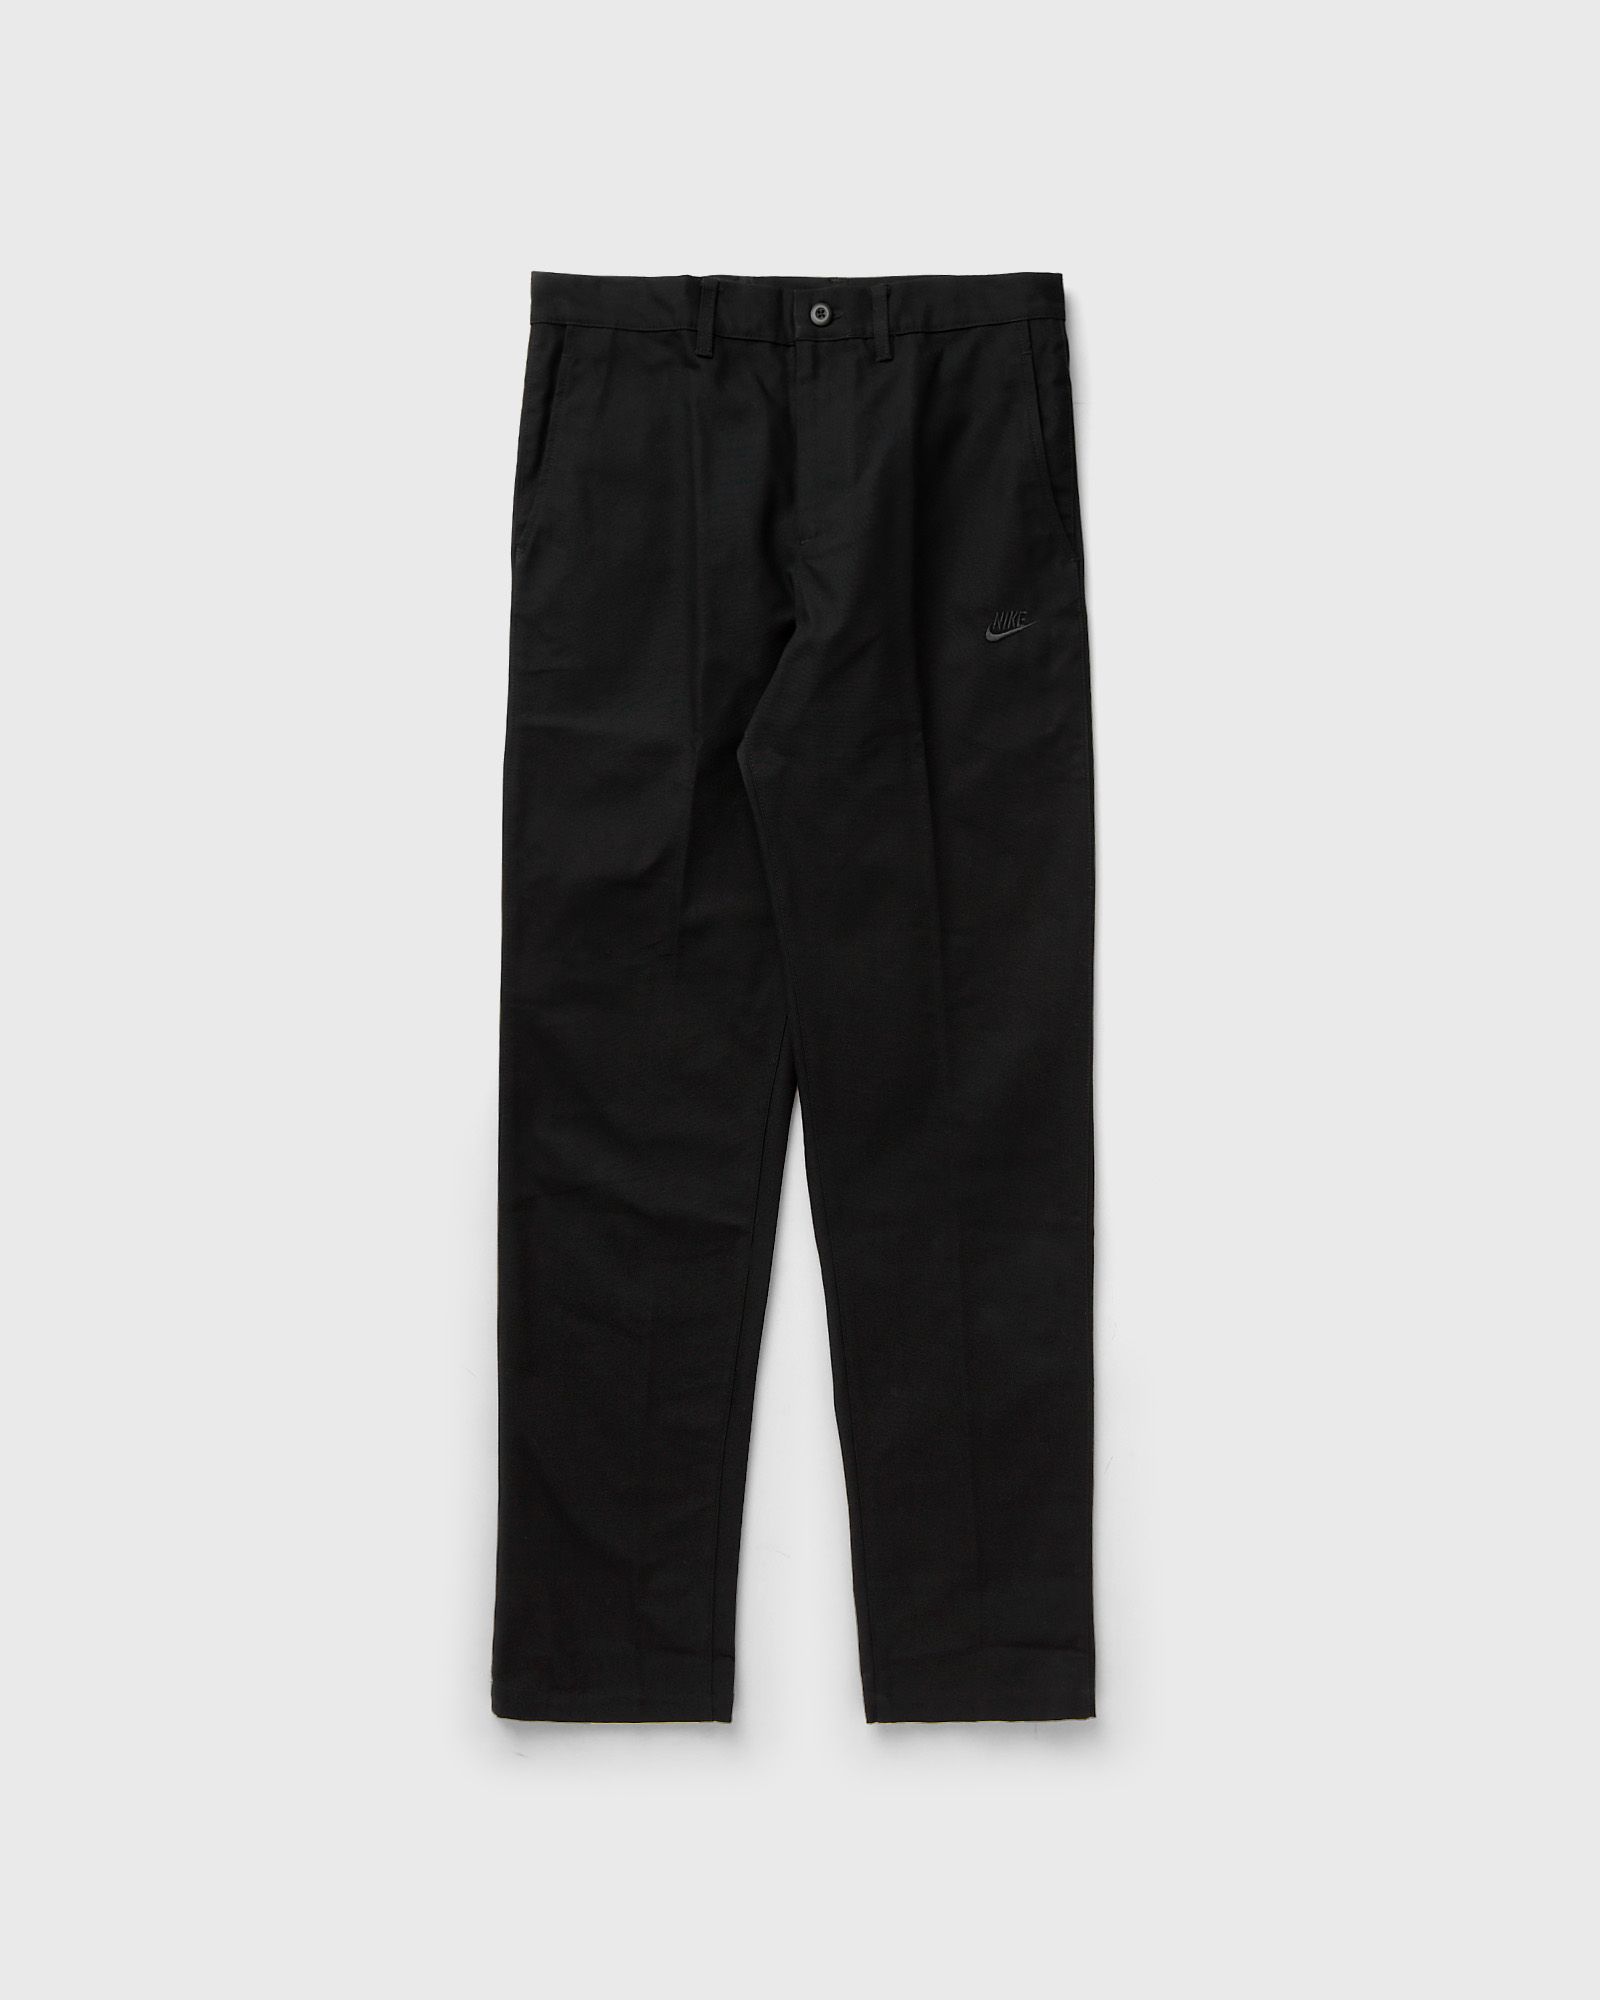 Nike - club chino pants men casual pants black in größe:xxl